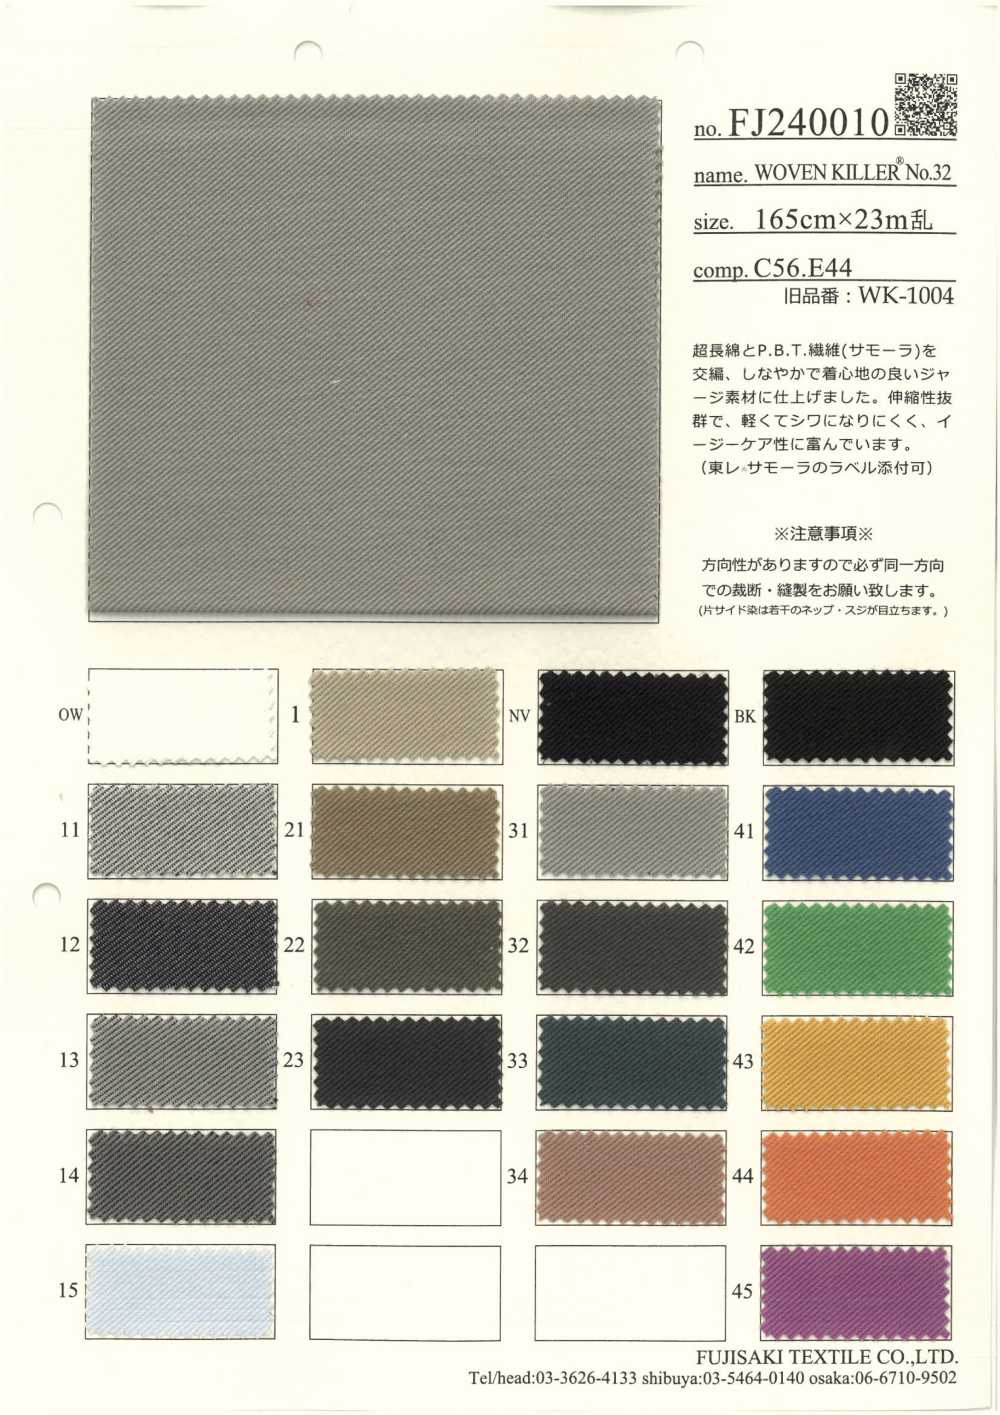 FJ240010 SÁT THỦ WOVWEN[Vải] Fujisaki Textile